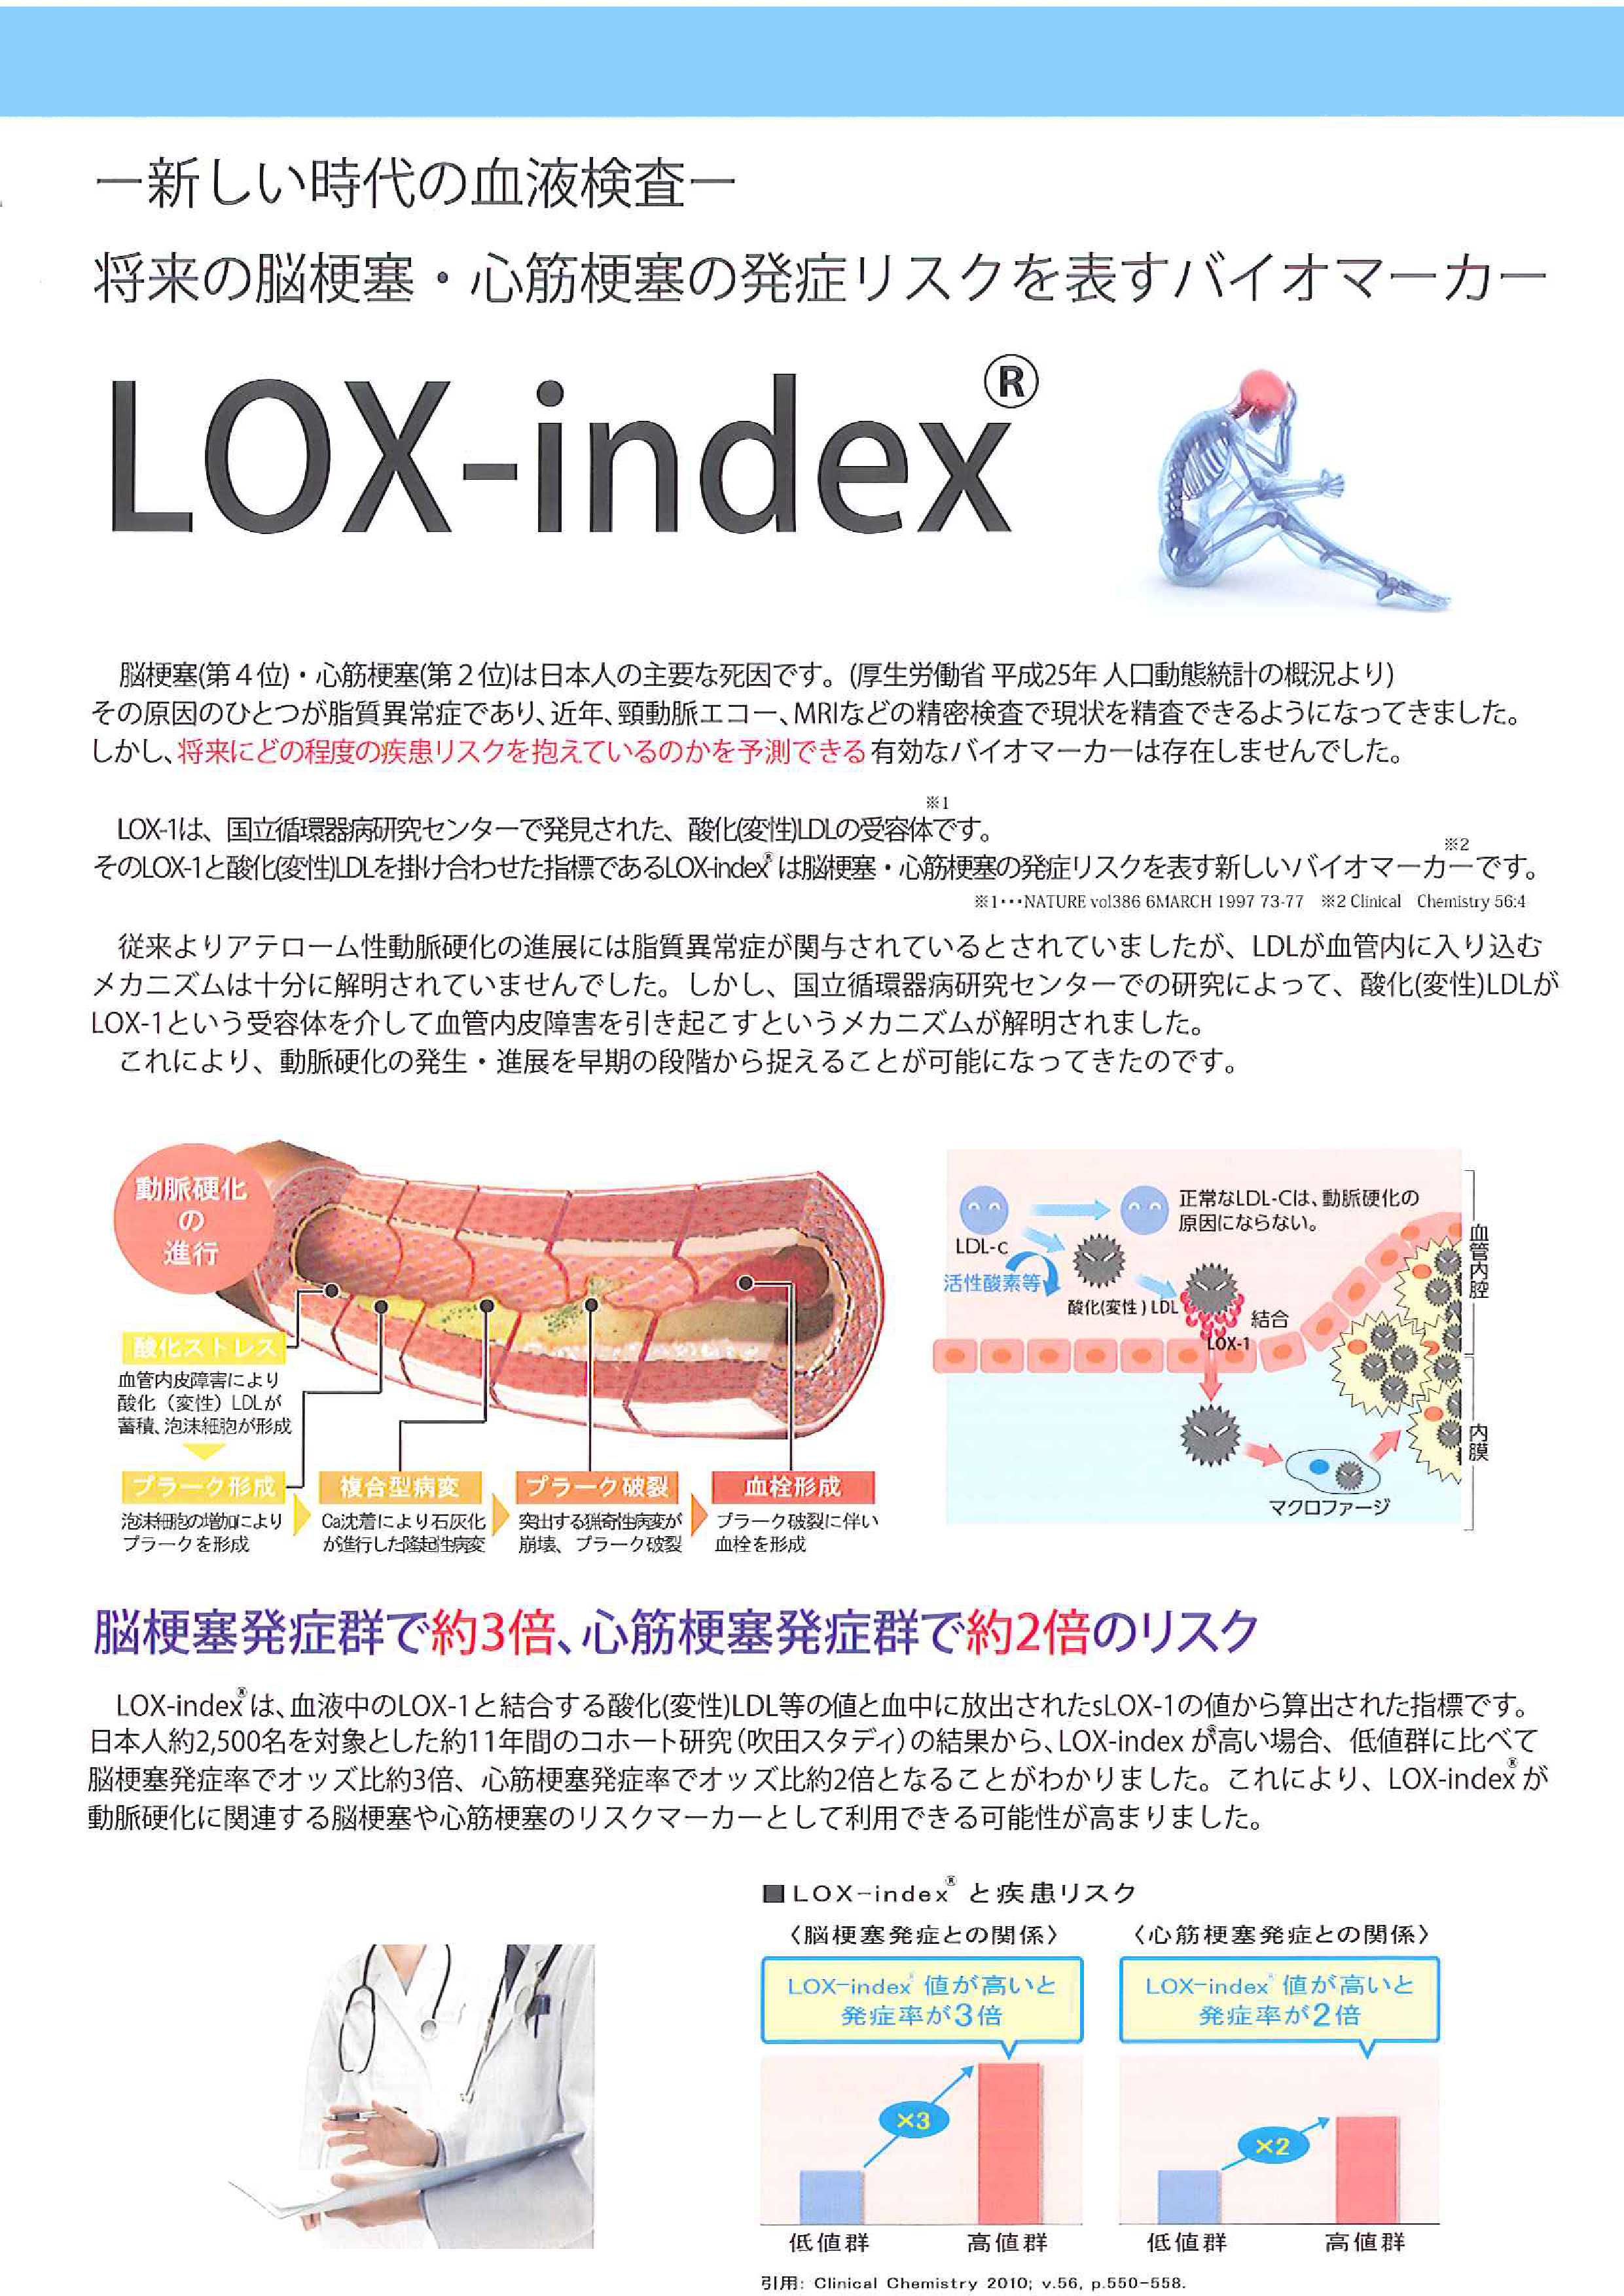 LOX-index